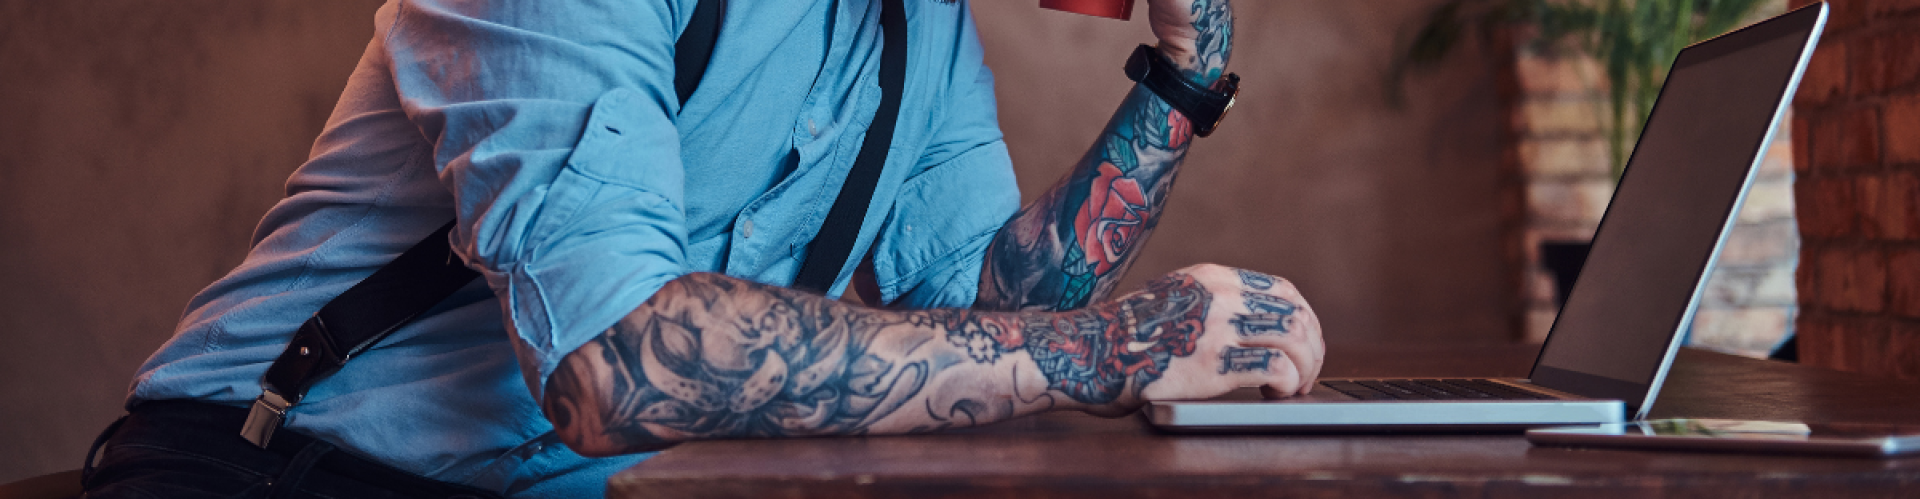 Online adverteren met jouw tattooshop